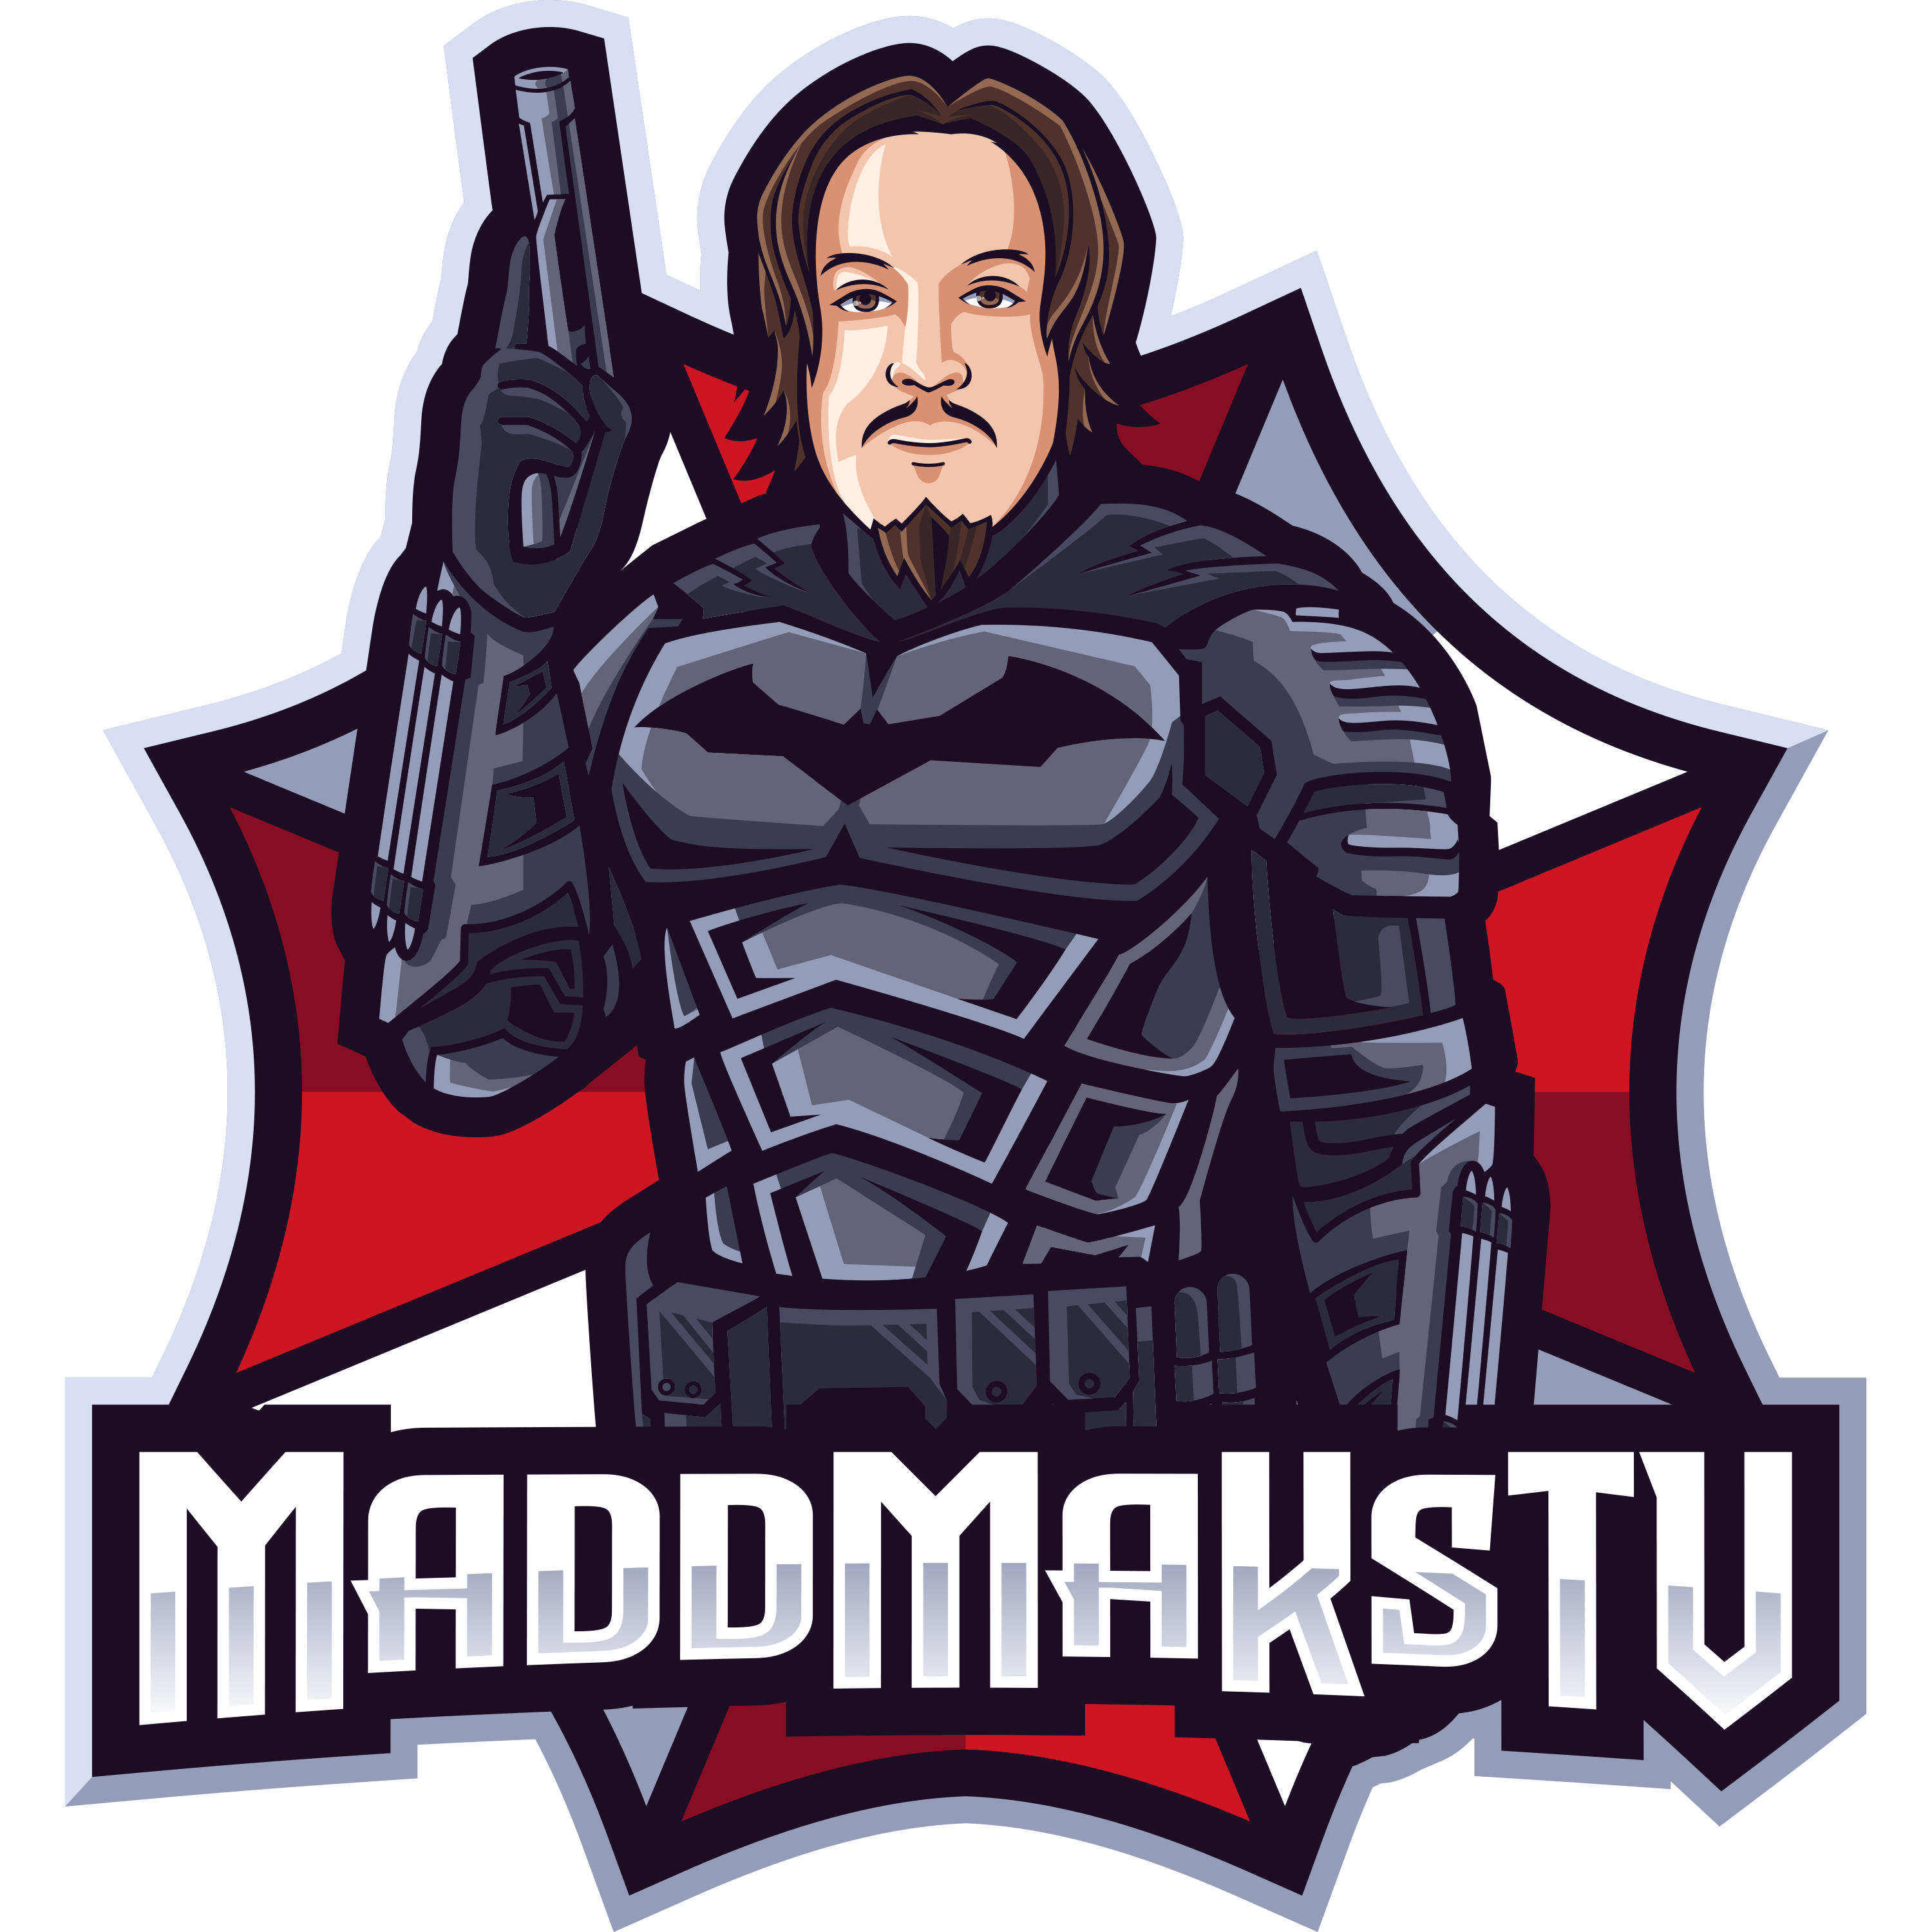 MaddMaksTv logo